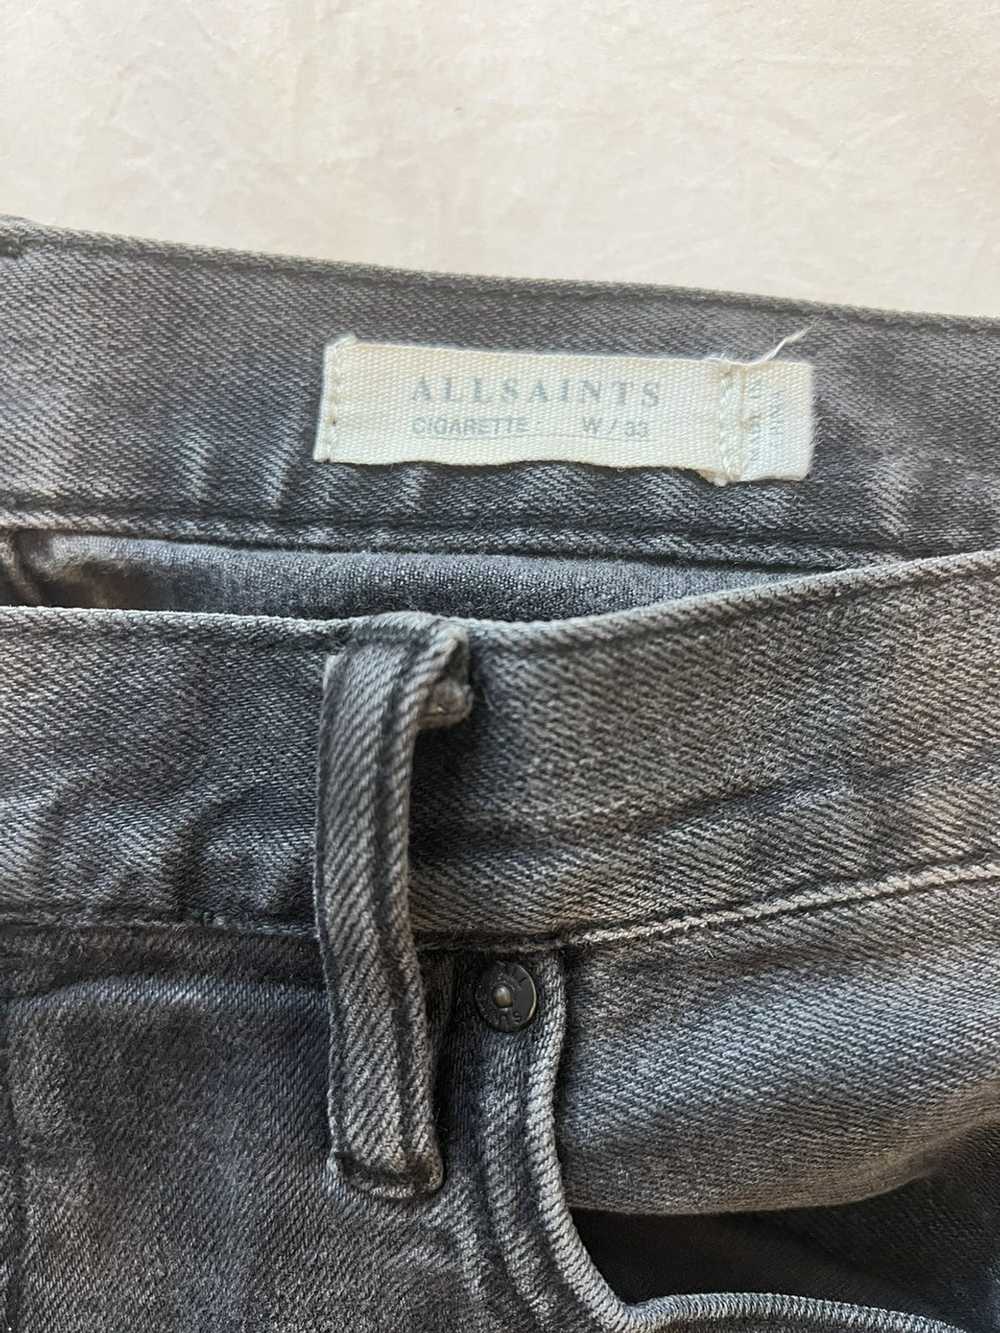 Allsaints Allsaints cigarette jeans mens - image 2